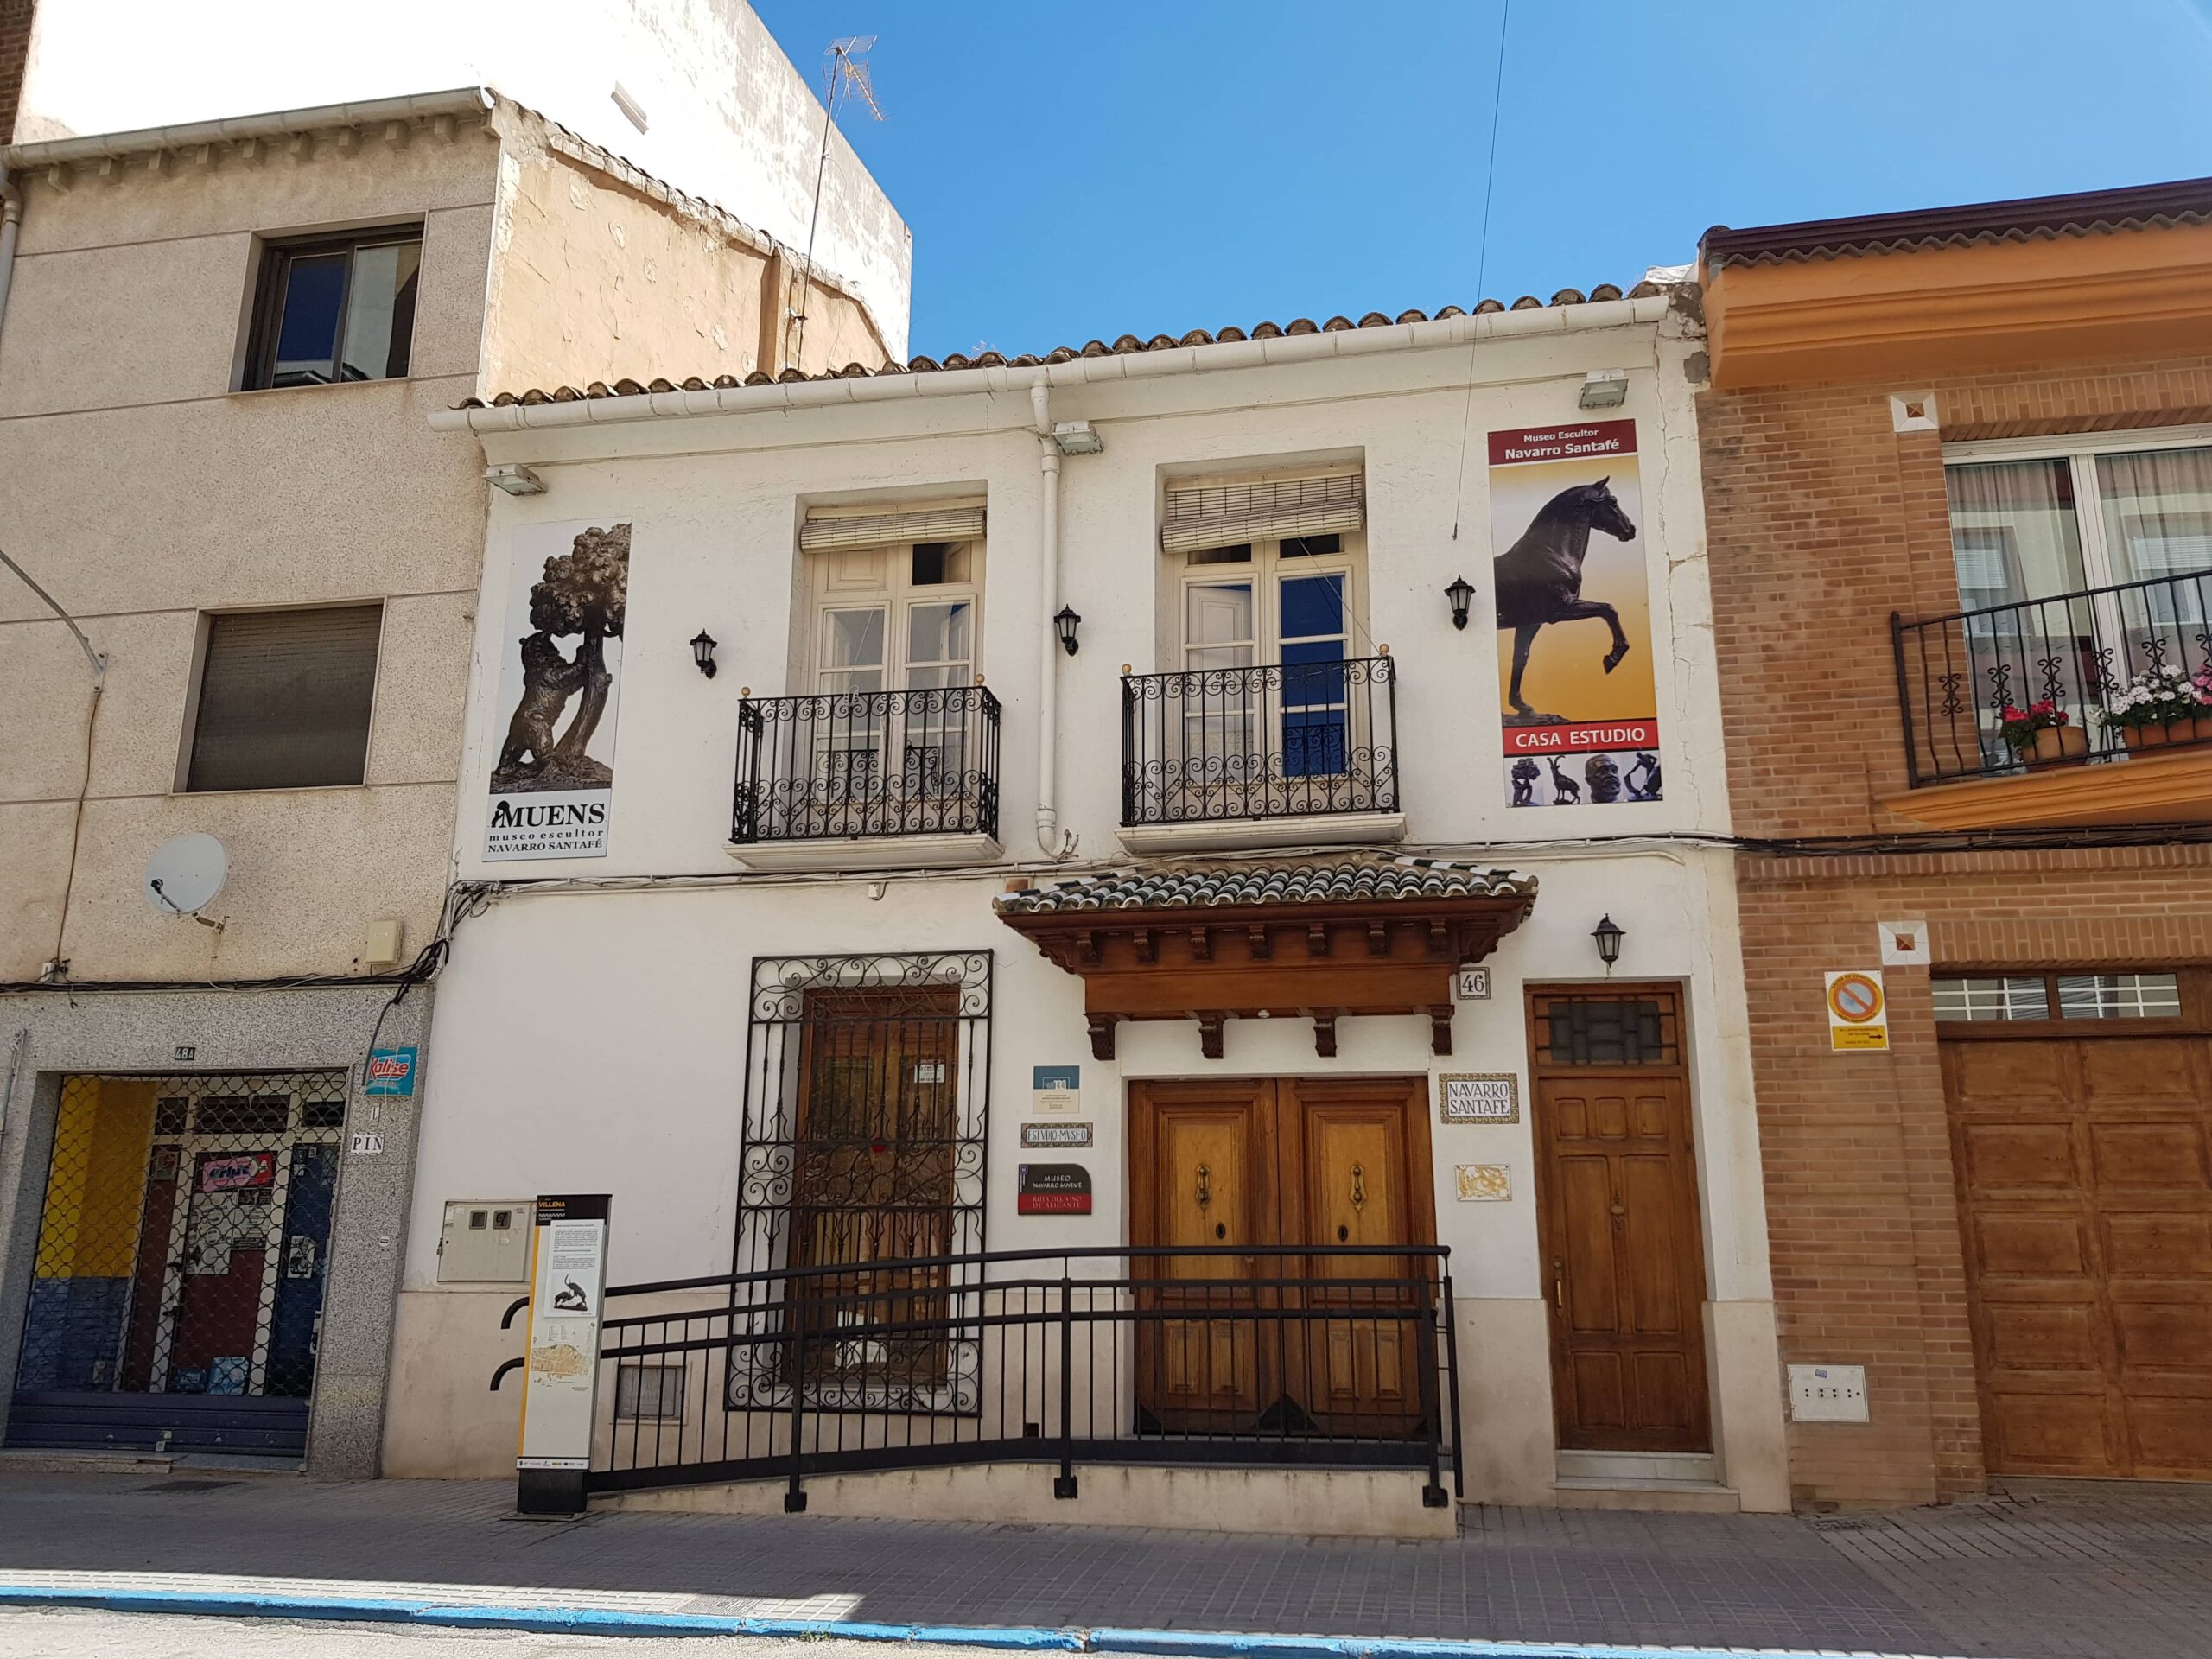 El Museo Navarro Santafé reabrirá sus puertas coincidiendo con el Día de los Museos